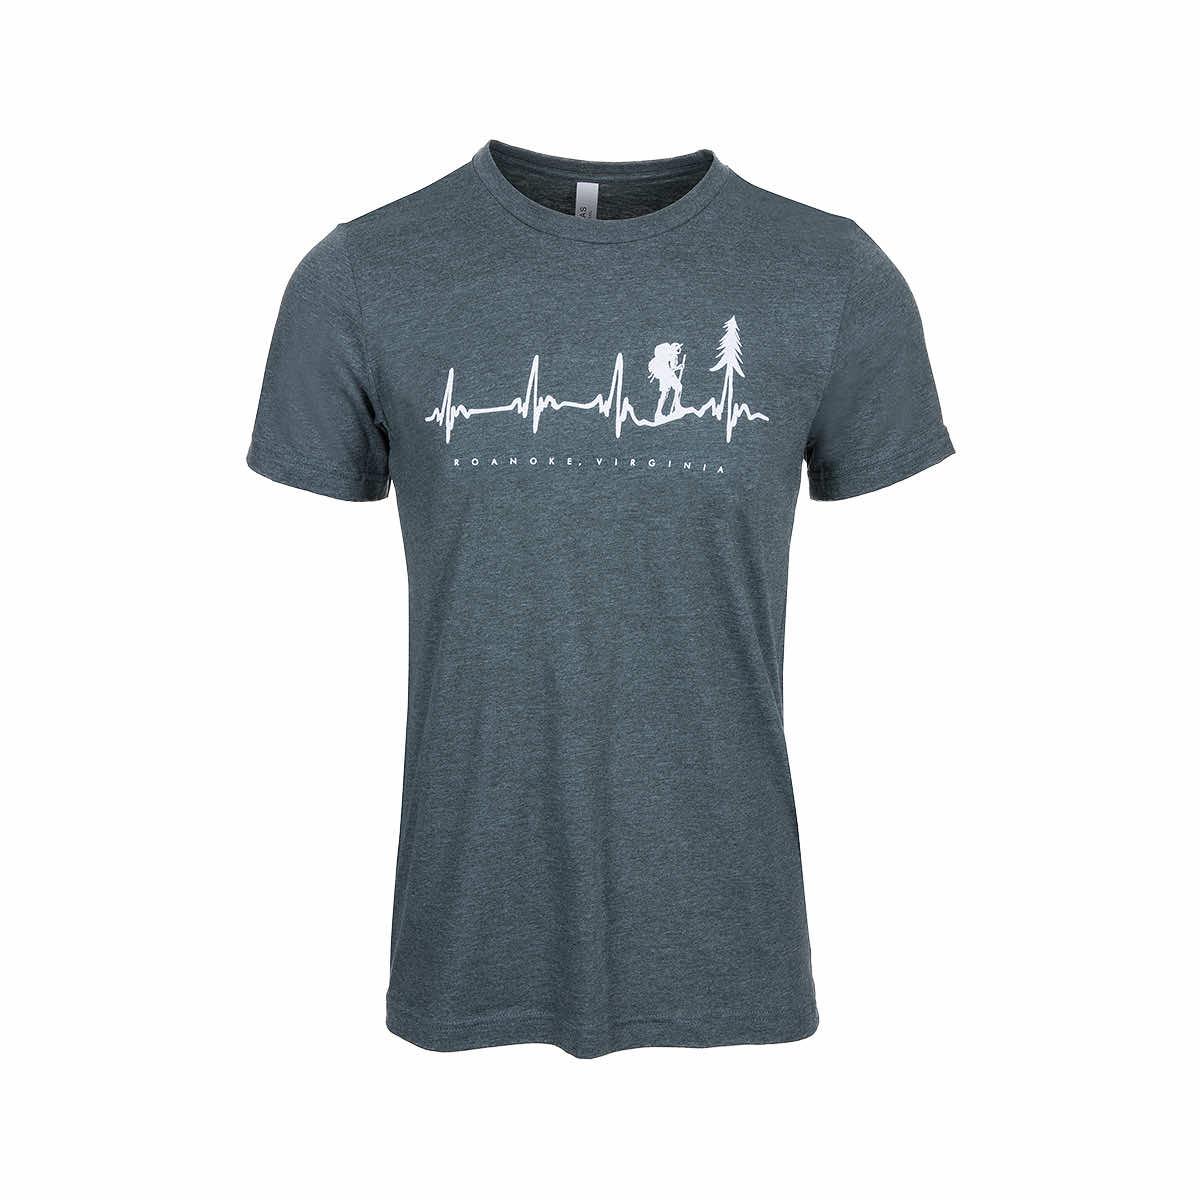  Roanoke Hiker Heartbeat Short Sleeve T- Shirt